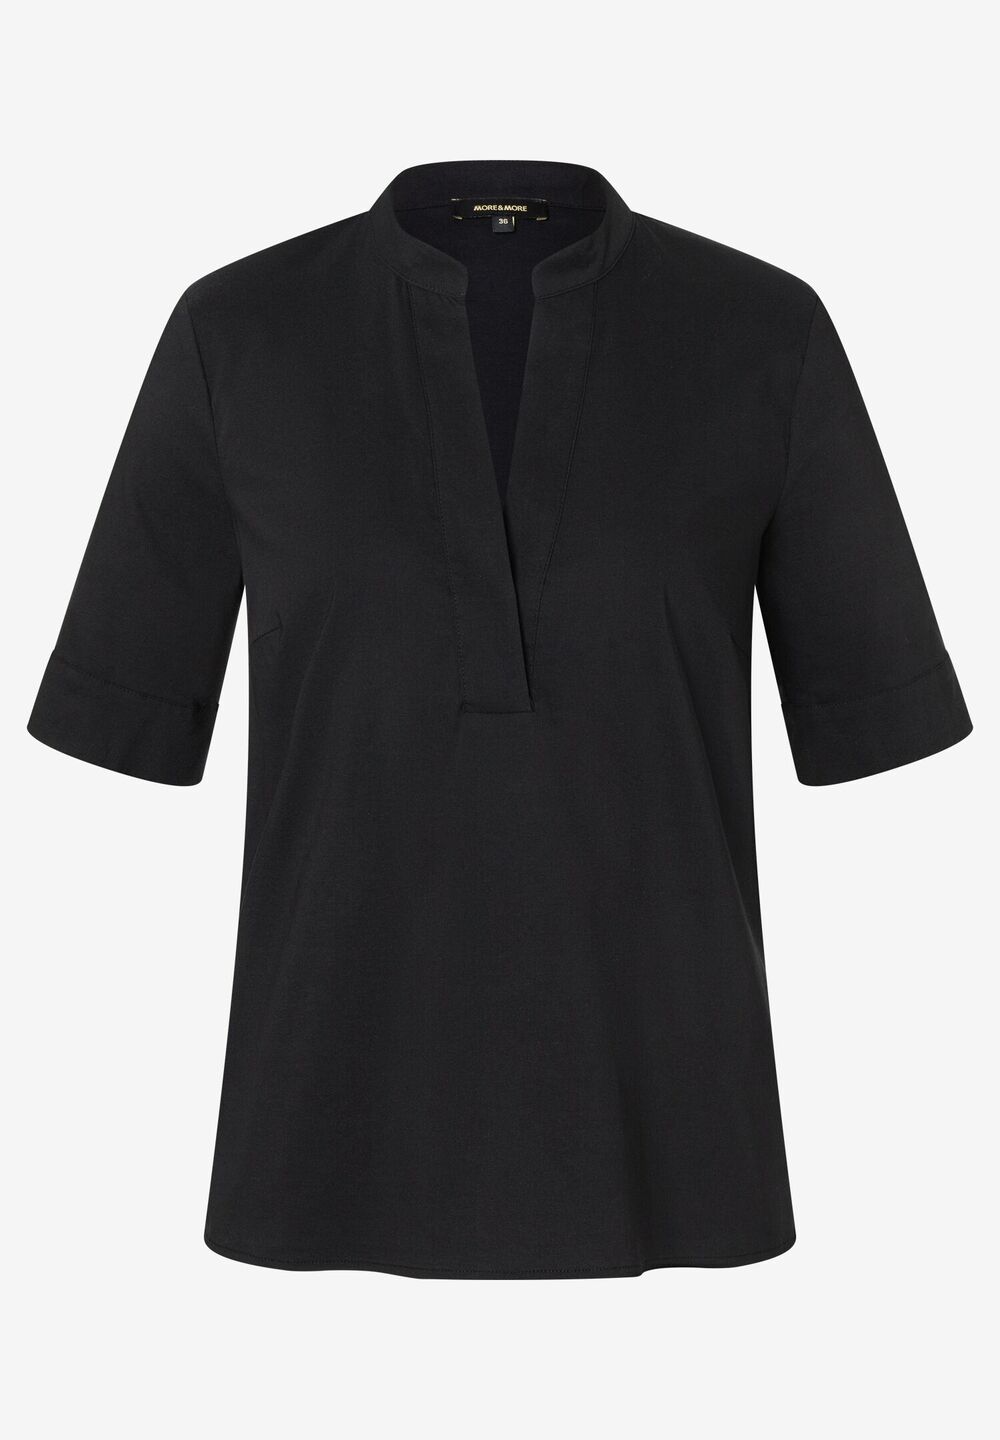 Baumwoll/Stretch Bluse, schwarz, Sommer-Kollektion, schwarzFrontansicht